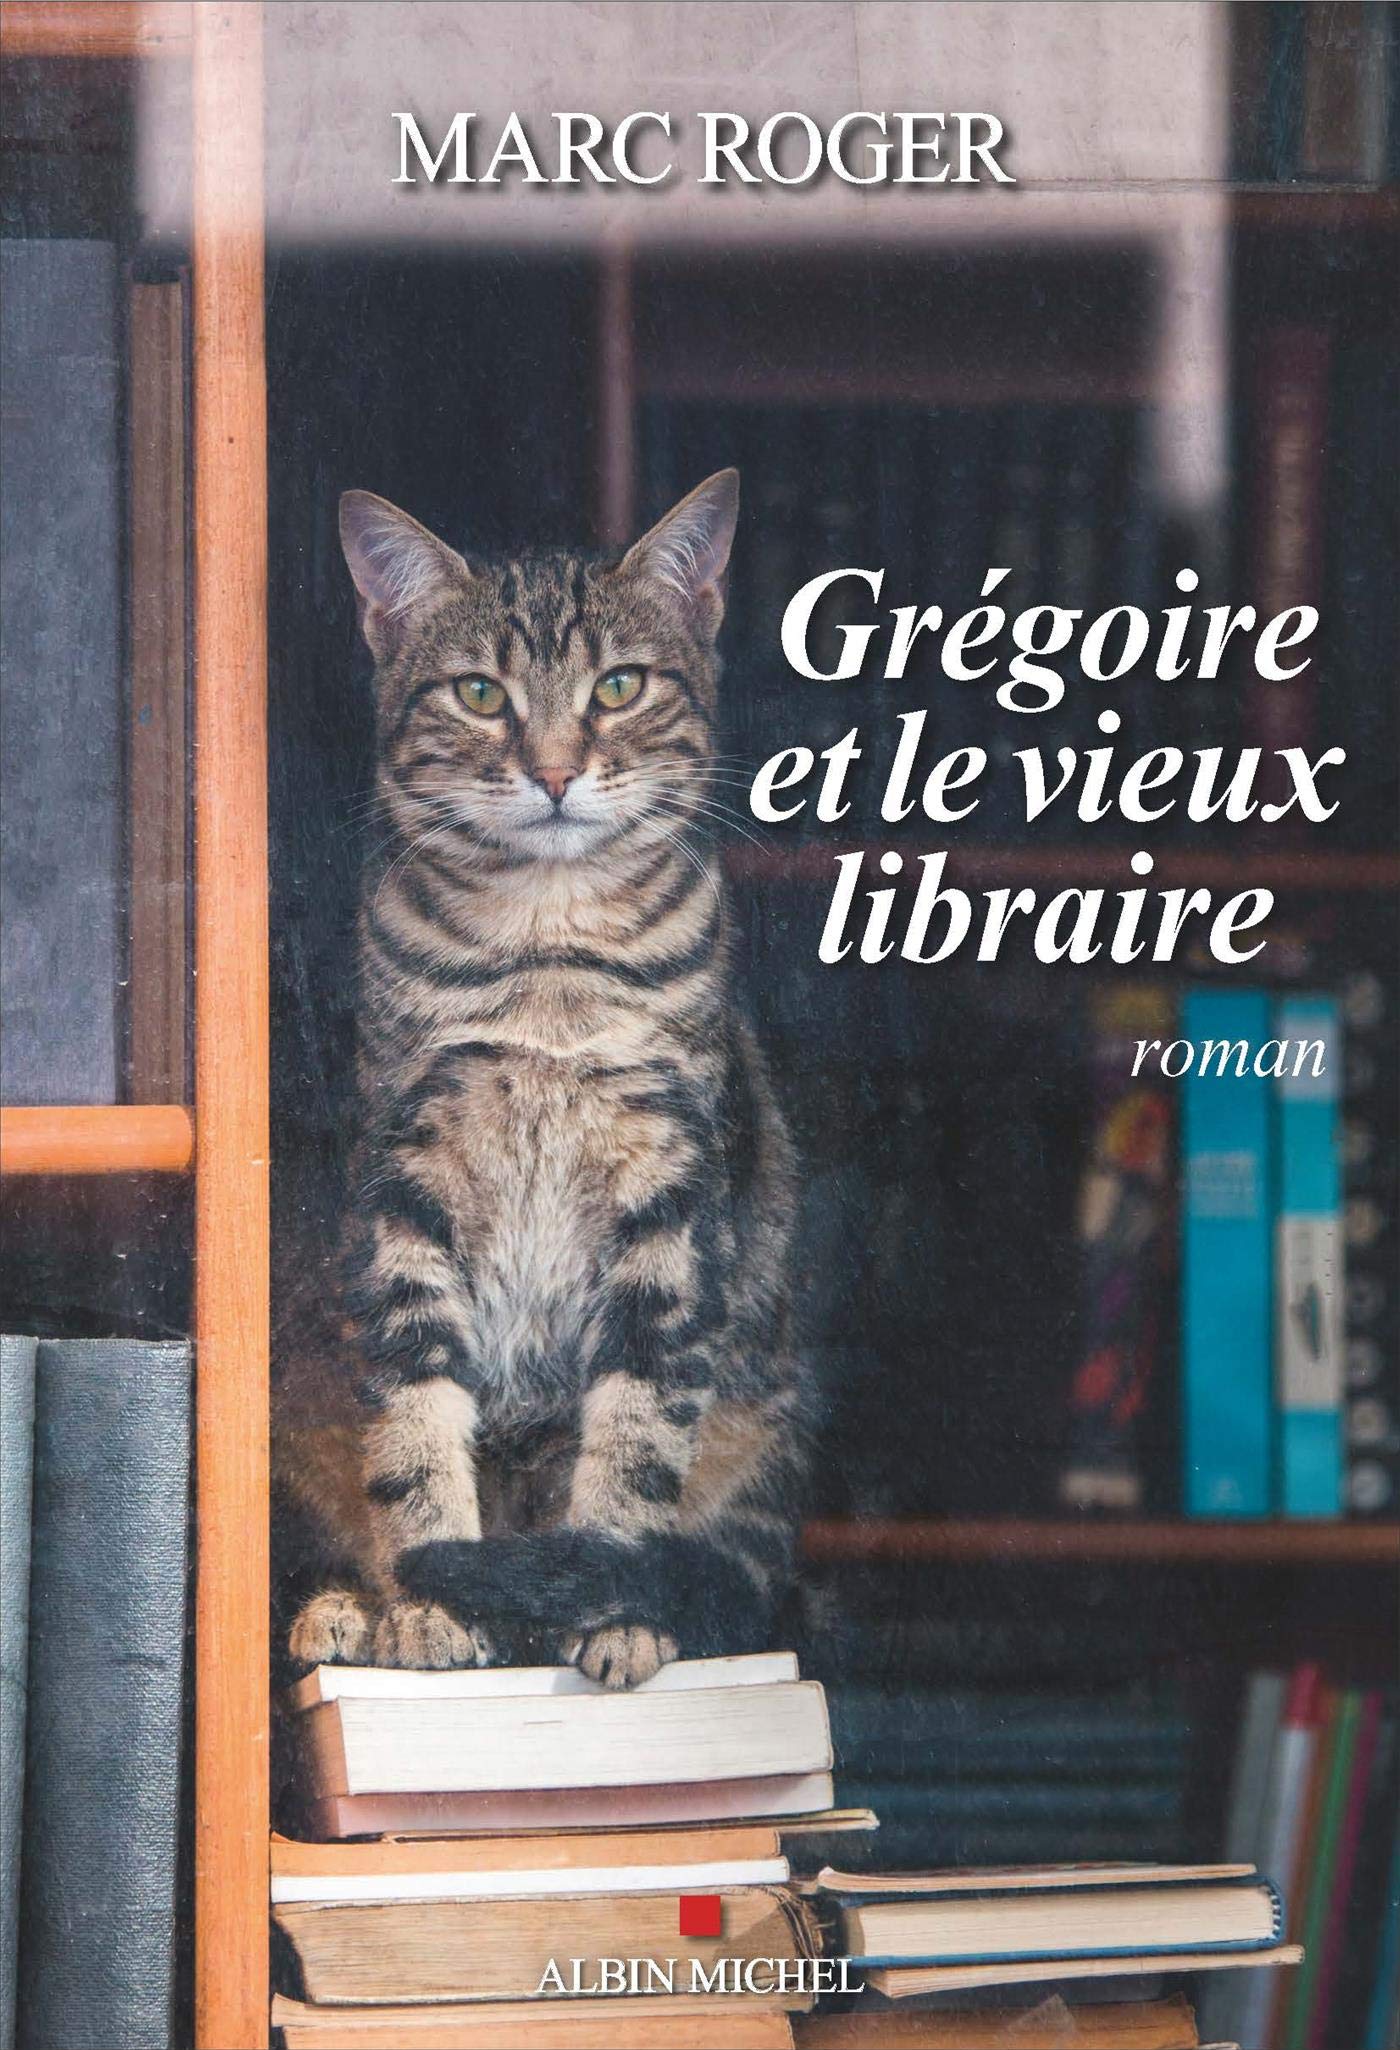 gregroire-et-le-vieux-libraire